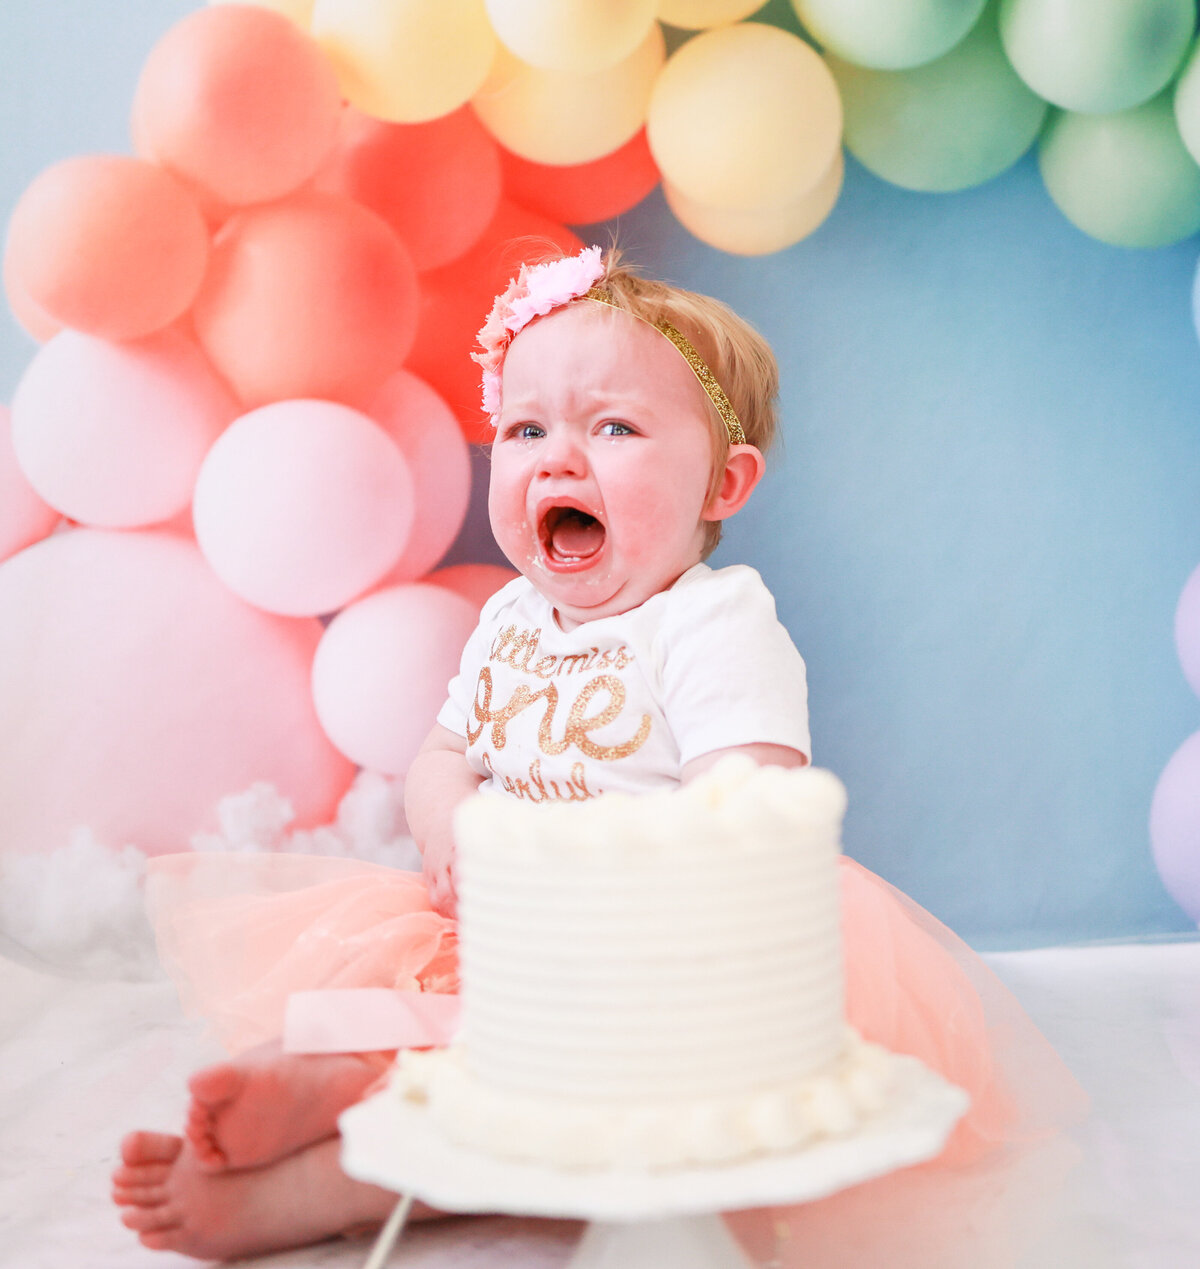 one year old birthday cake smash session in Atlanta Georgia by Amanda Richardson Photography